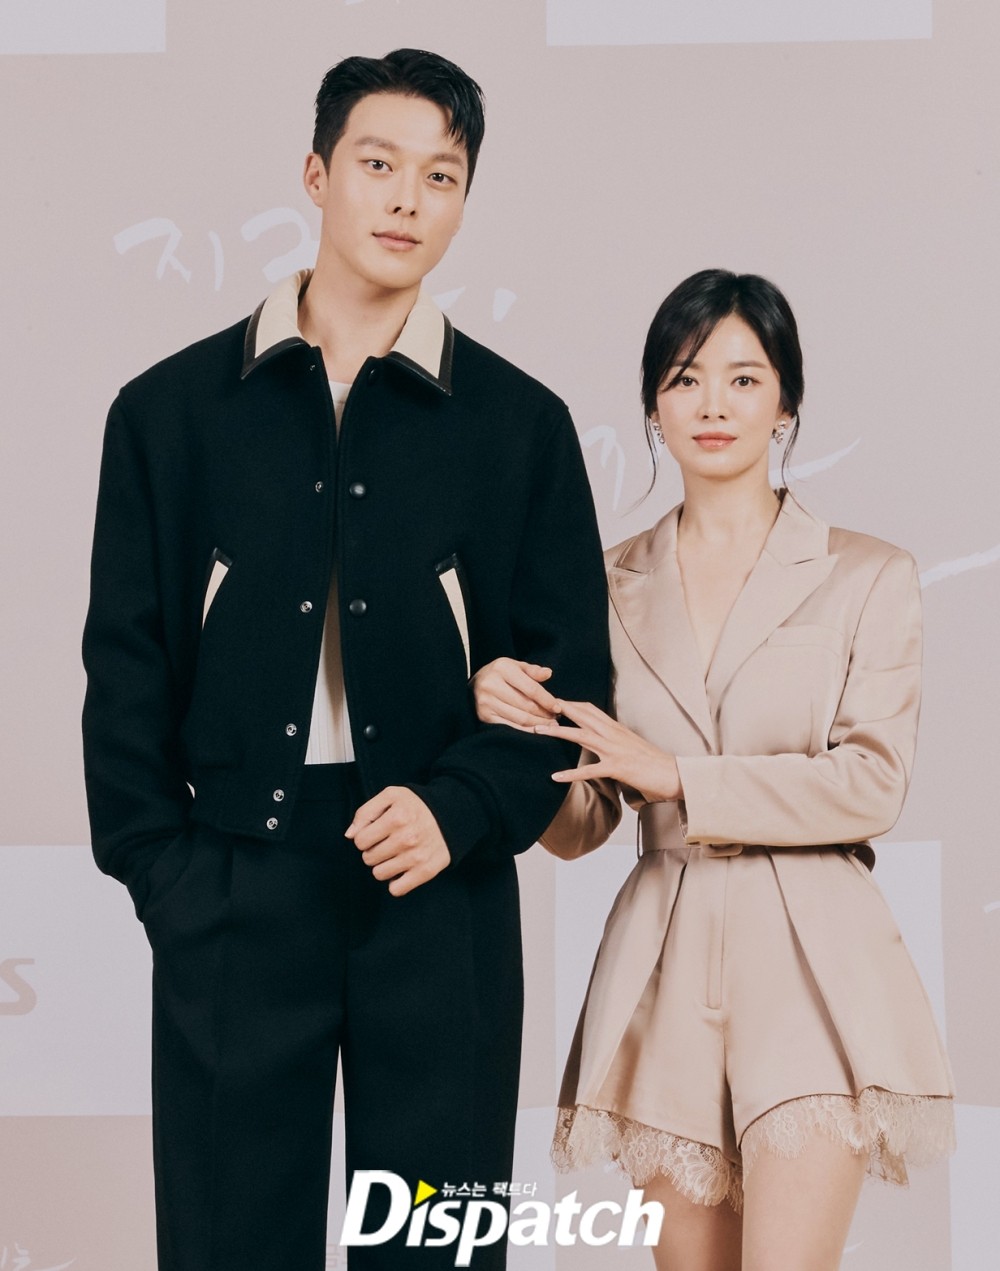 Song Hye Kyo hé lộ suy nghĩ về tình mới Jang Ki Yong ở họp báo, ai dè chàng bày tỏ luôn cảm xúc thật khi nhìn vào mắt nàng - Ảnh 2.